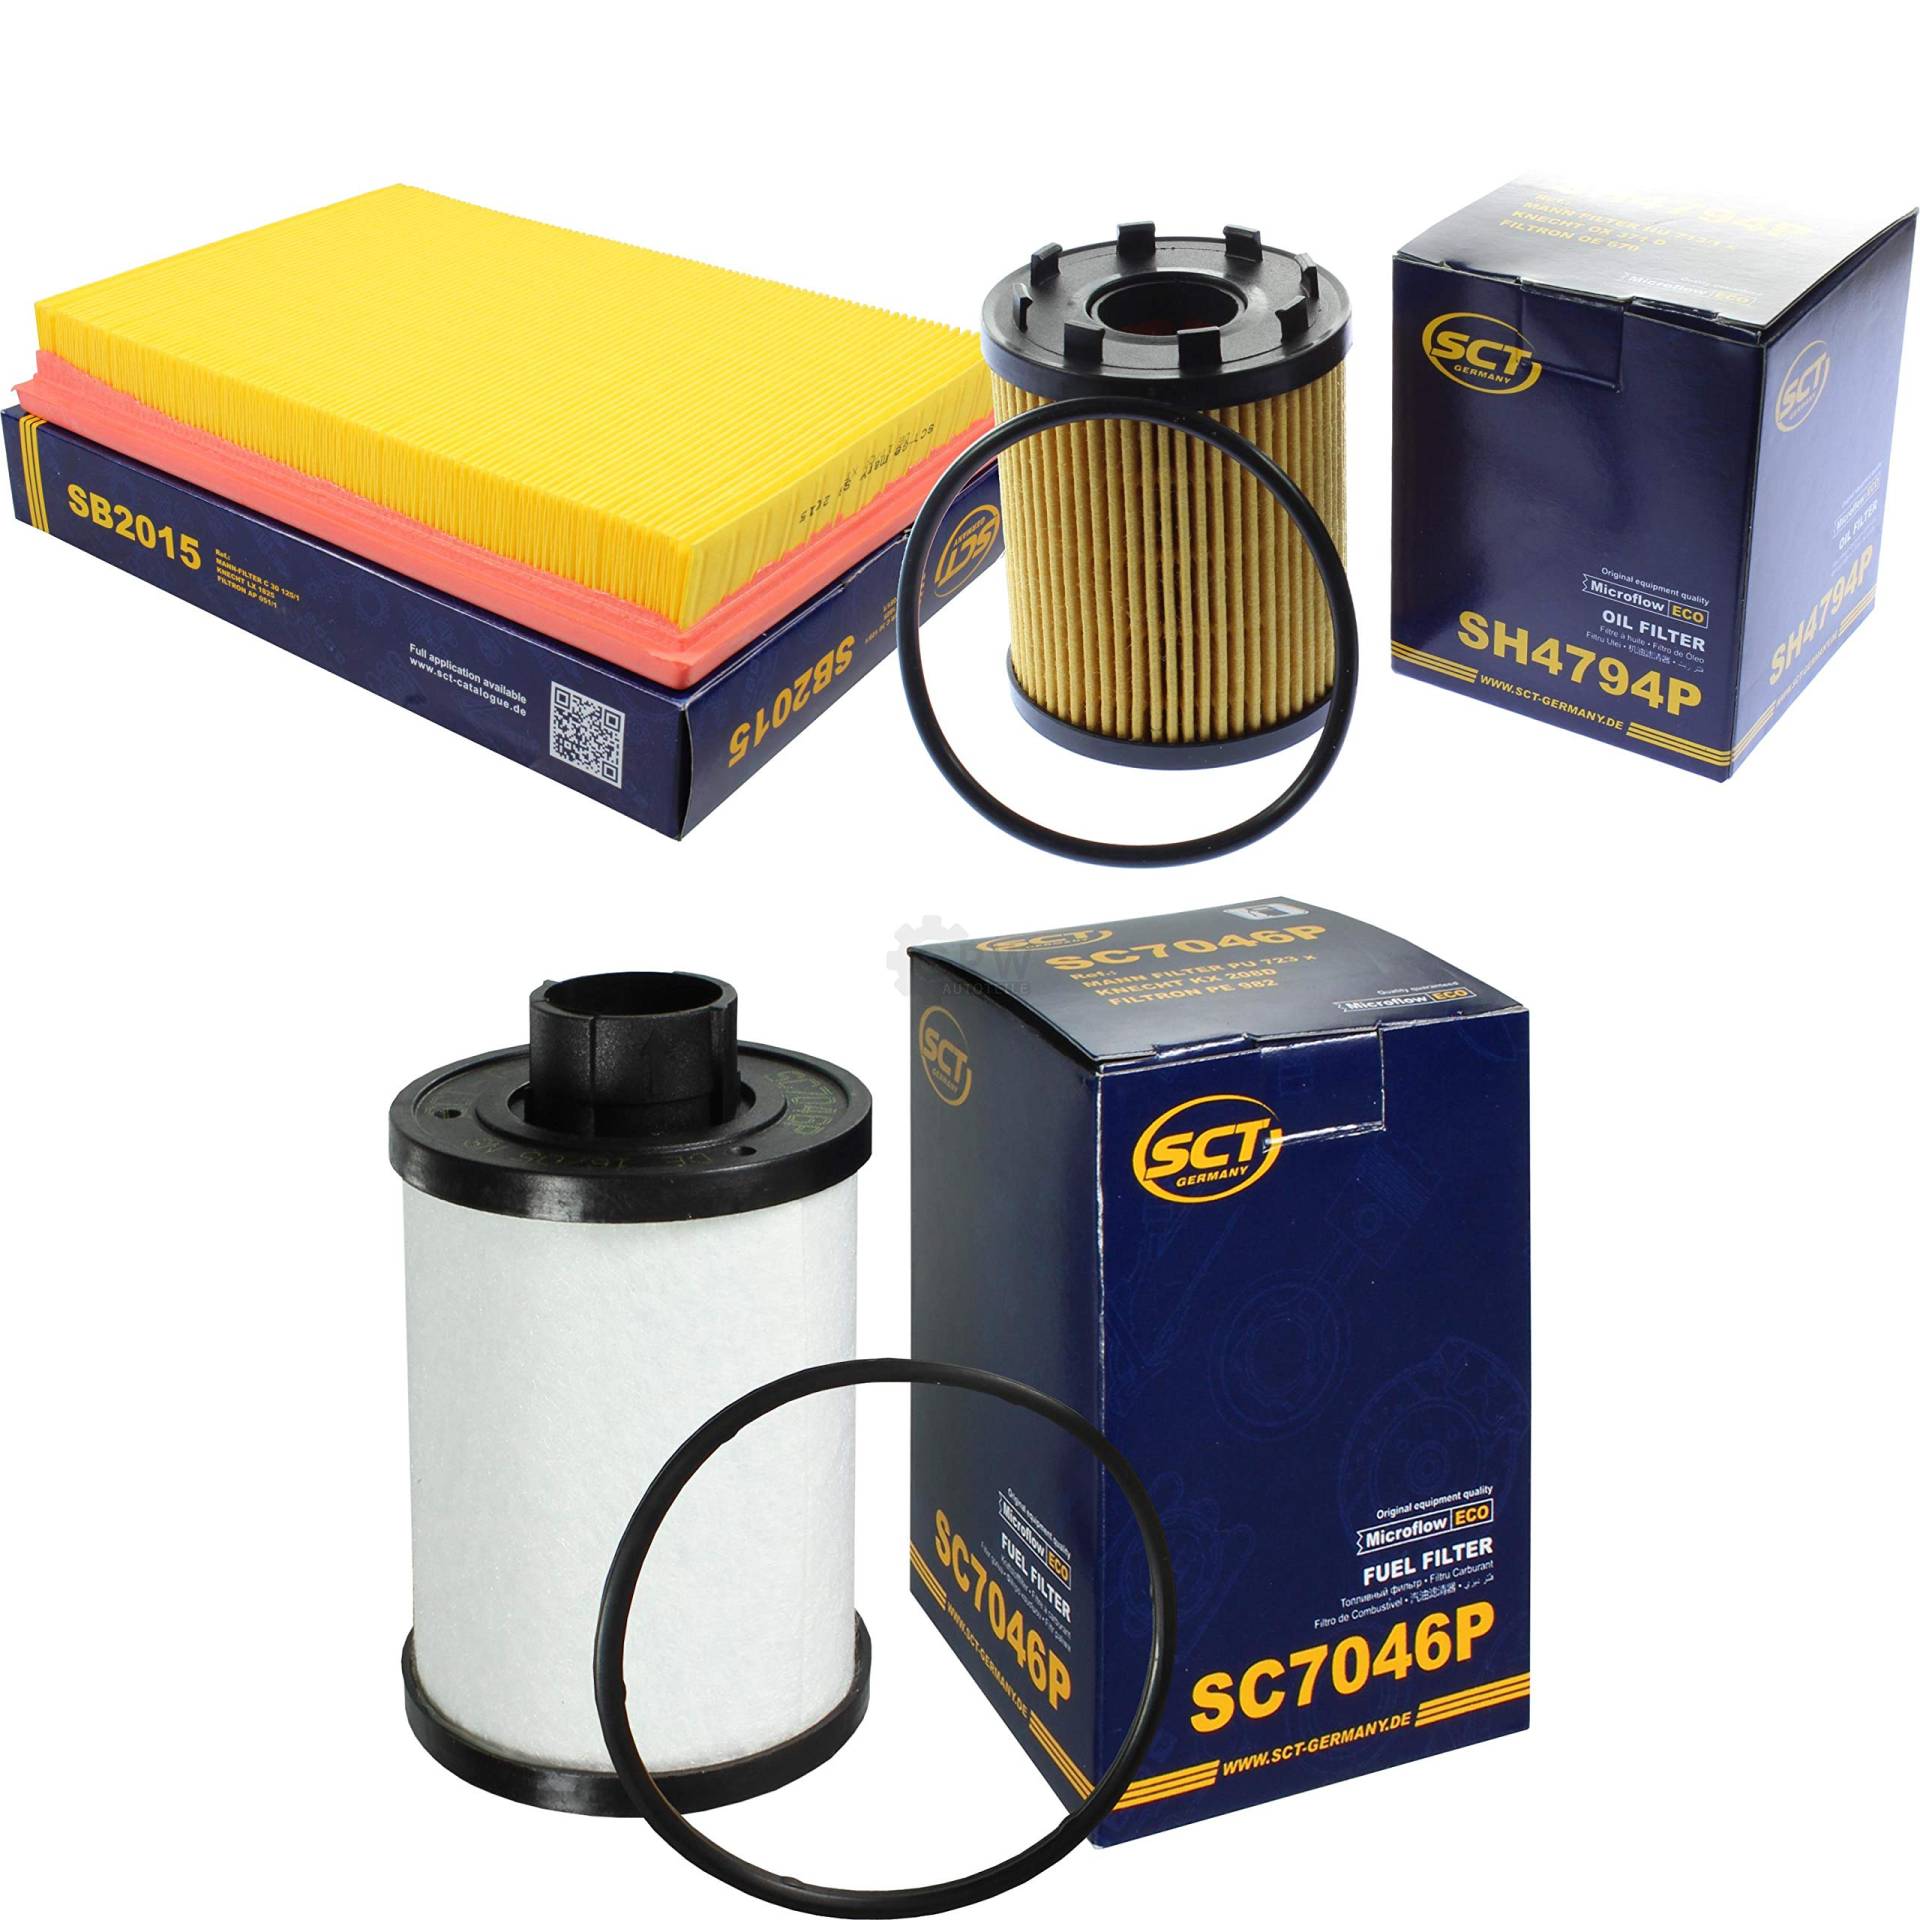 SCT Germany Inspektions Set Inspektionspaket Luftfilter Ölfilter Kraftstofffilter von Diederichs